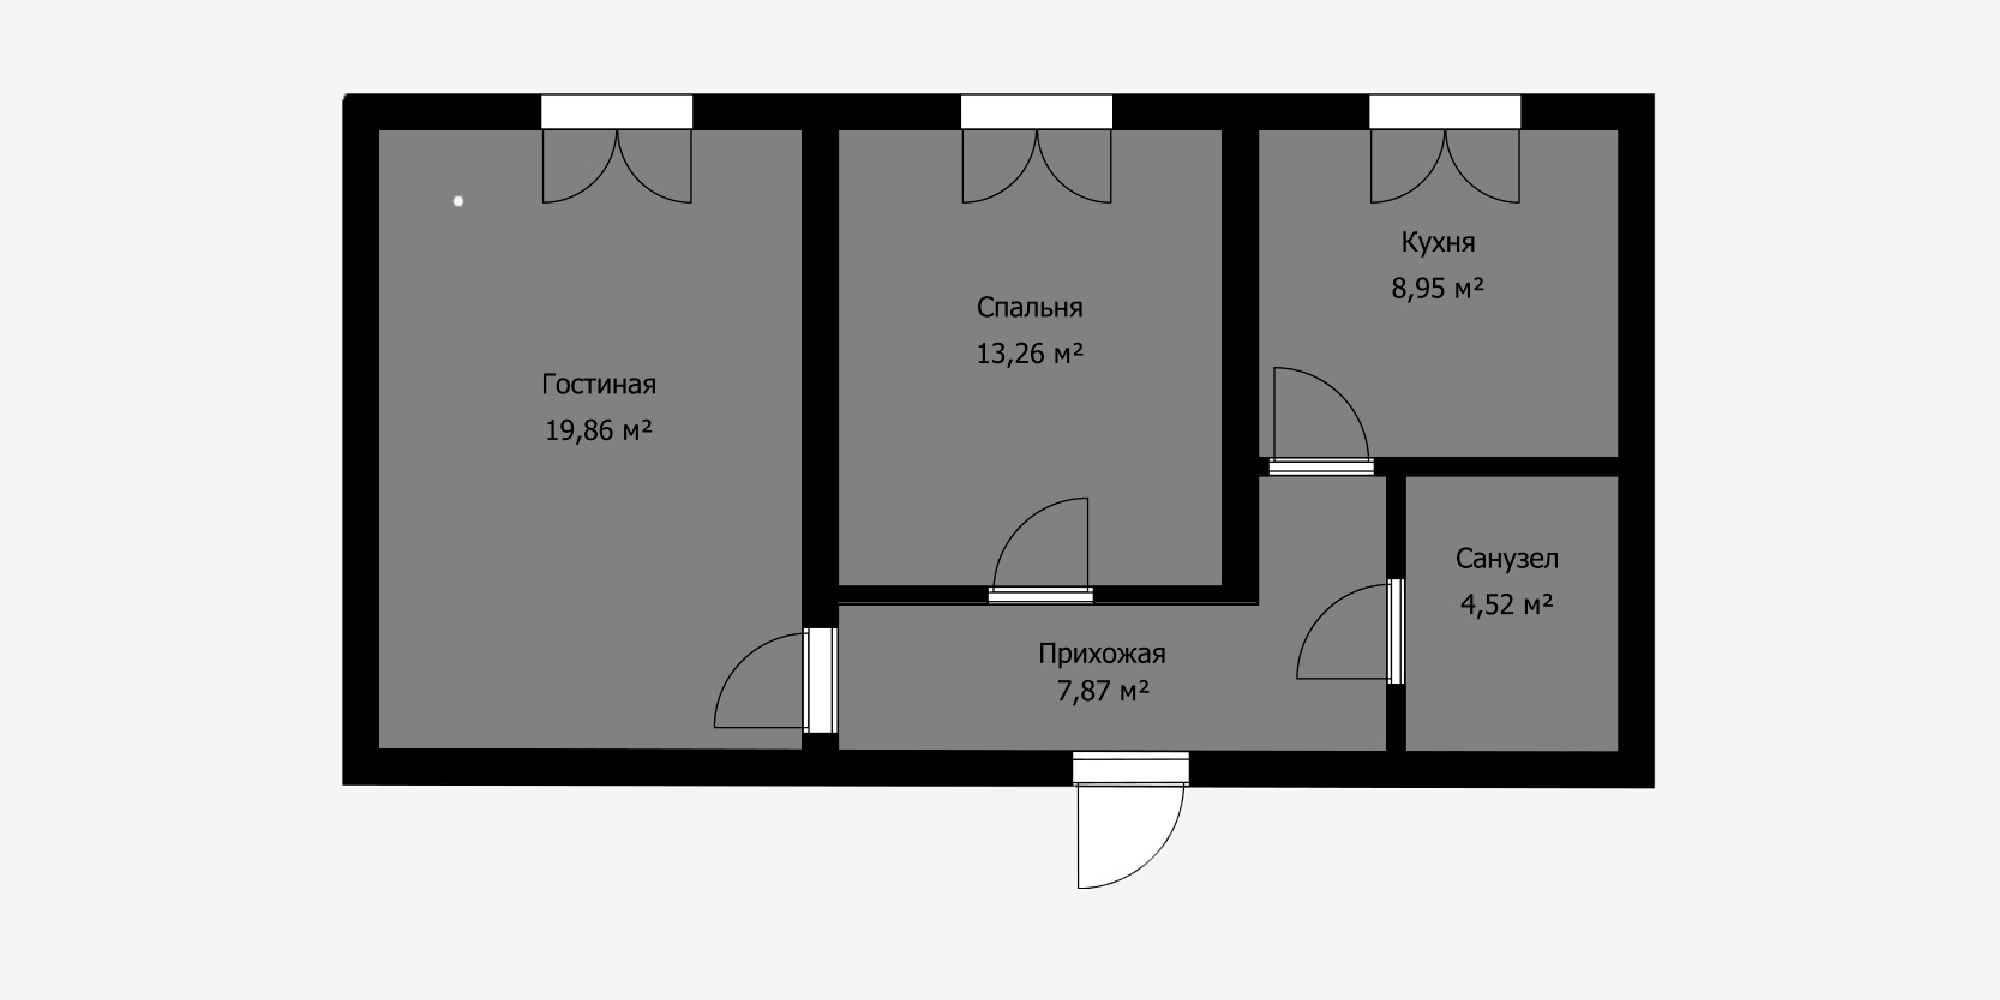 V panelových domech jsou obvykle všechny příčné stěny nosné a lze demontovat pouze jednu příčku - mezi obývacím pokojem a chodbou